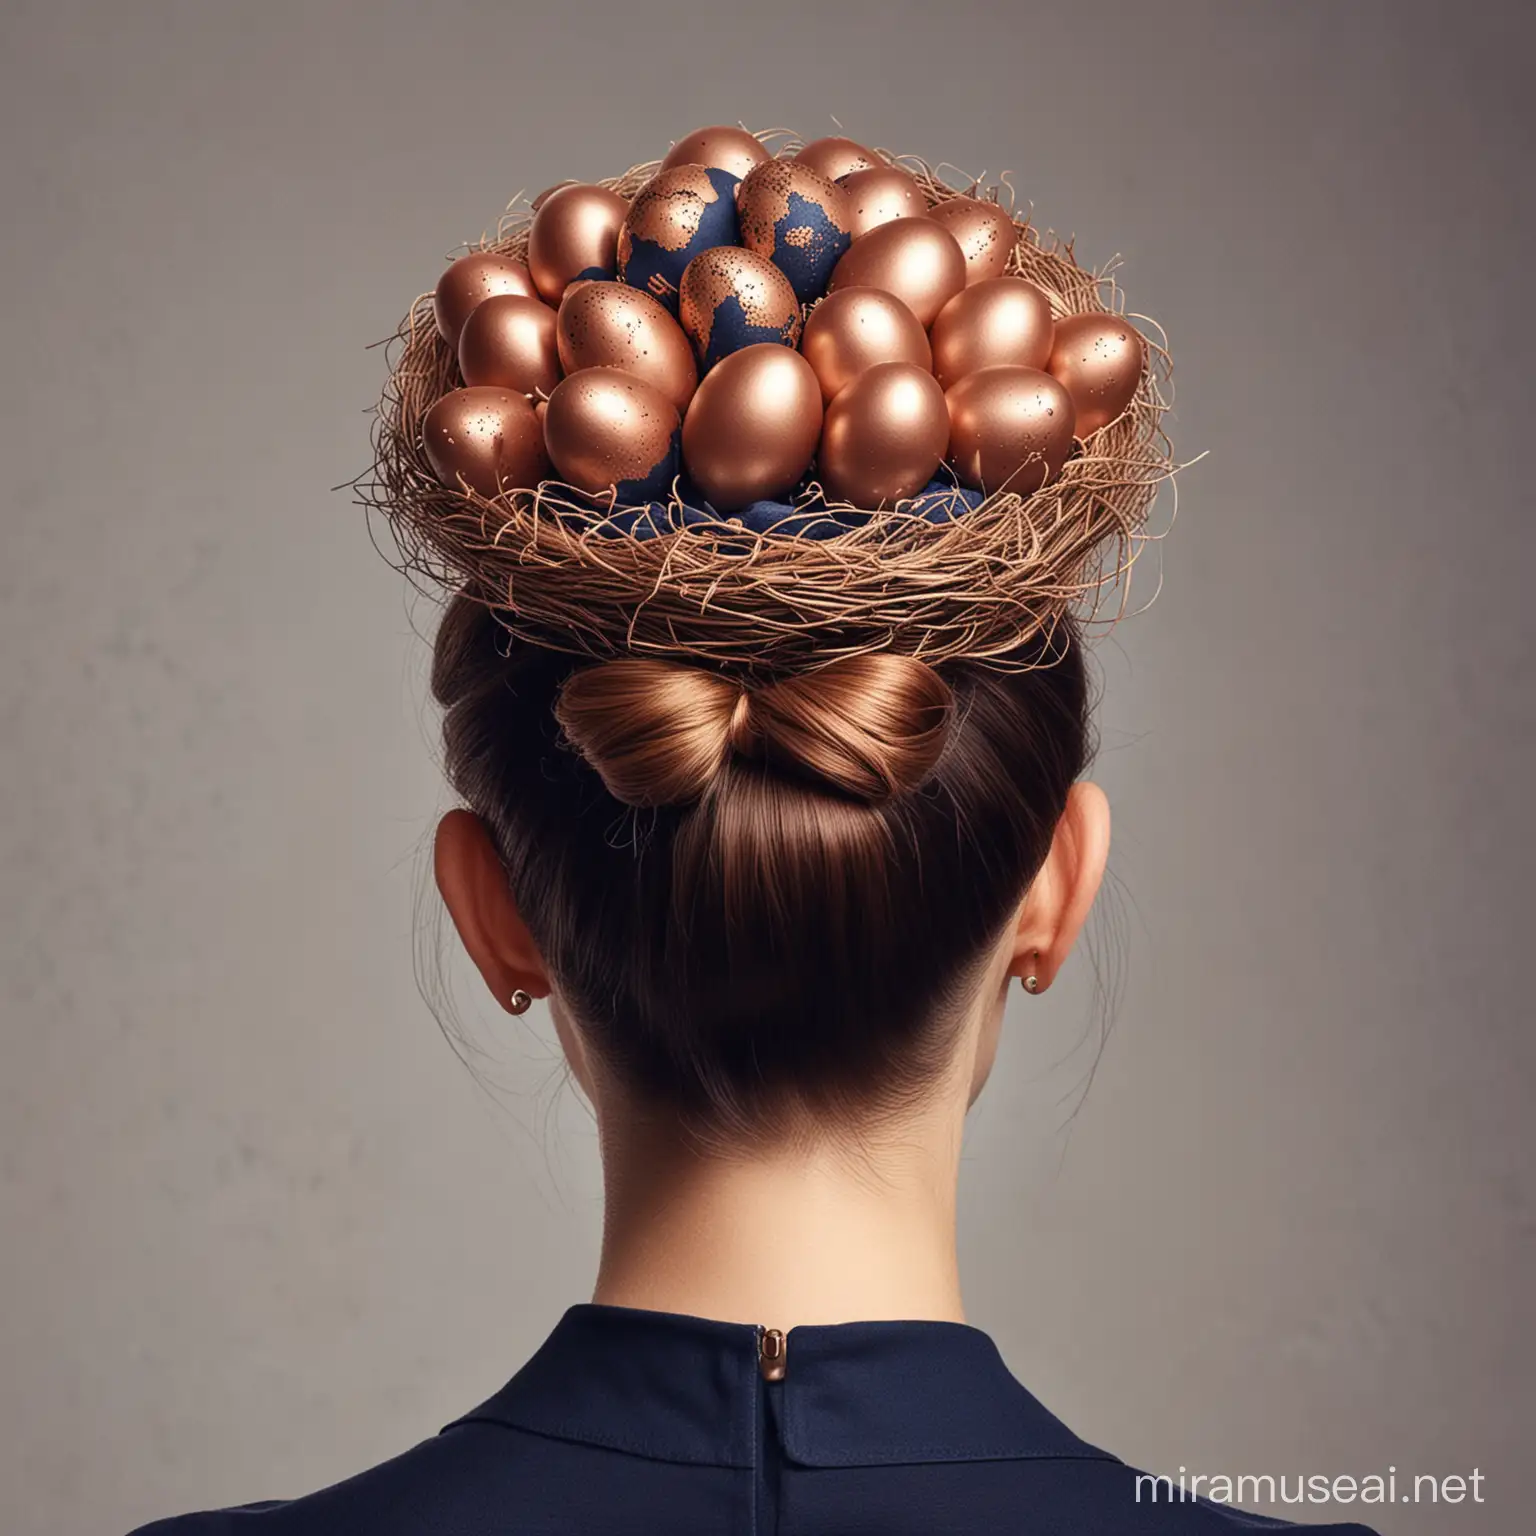 Je souhaiterais une image de coiffure de dos cheveux en chignon en forme de nid avec des oeufs bleus marine et rose gold pour une campagne publicitaire 